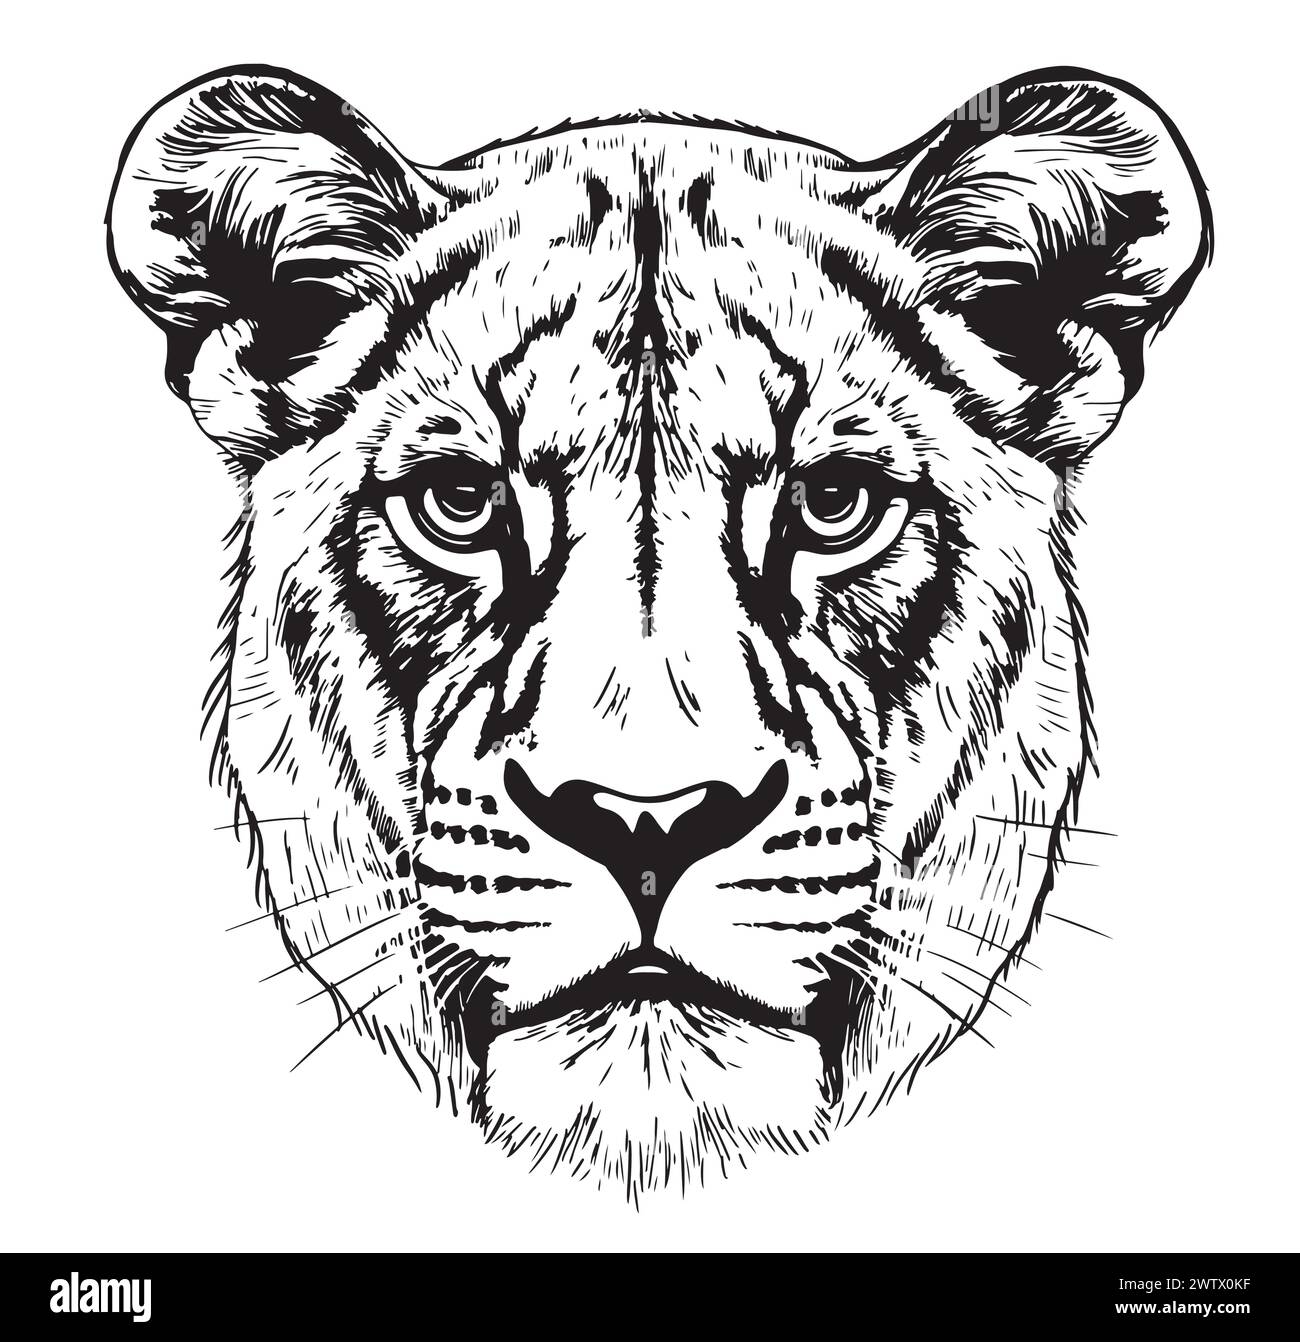 Ritratto Lioness testa di leone schizzo disegnato a mano stile incisione Wild Animals illustrazione vettoriale Illustrazione Vettoriale